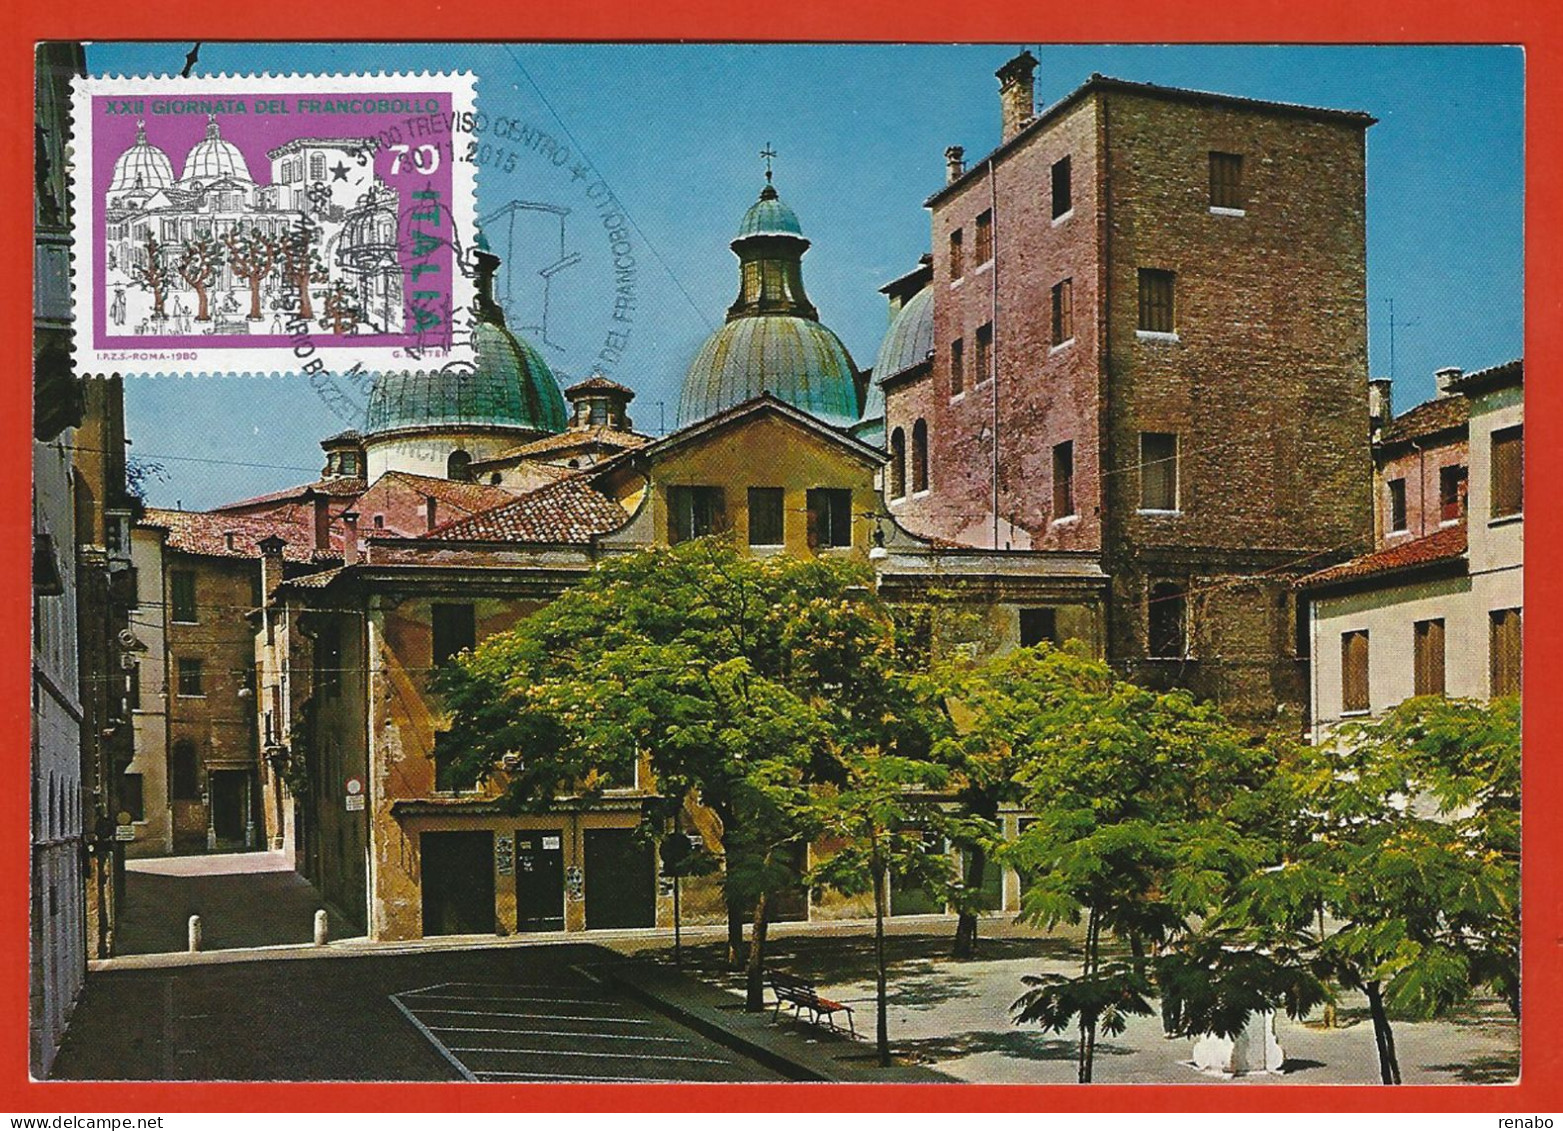 Italia 2015; Maximum Card, Piazza Pola A Treviso In: Giornata Francobollo 1980, In Cartolina, Annullo Speciale. - Cartes-Maximum (CM)